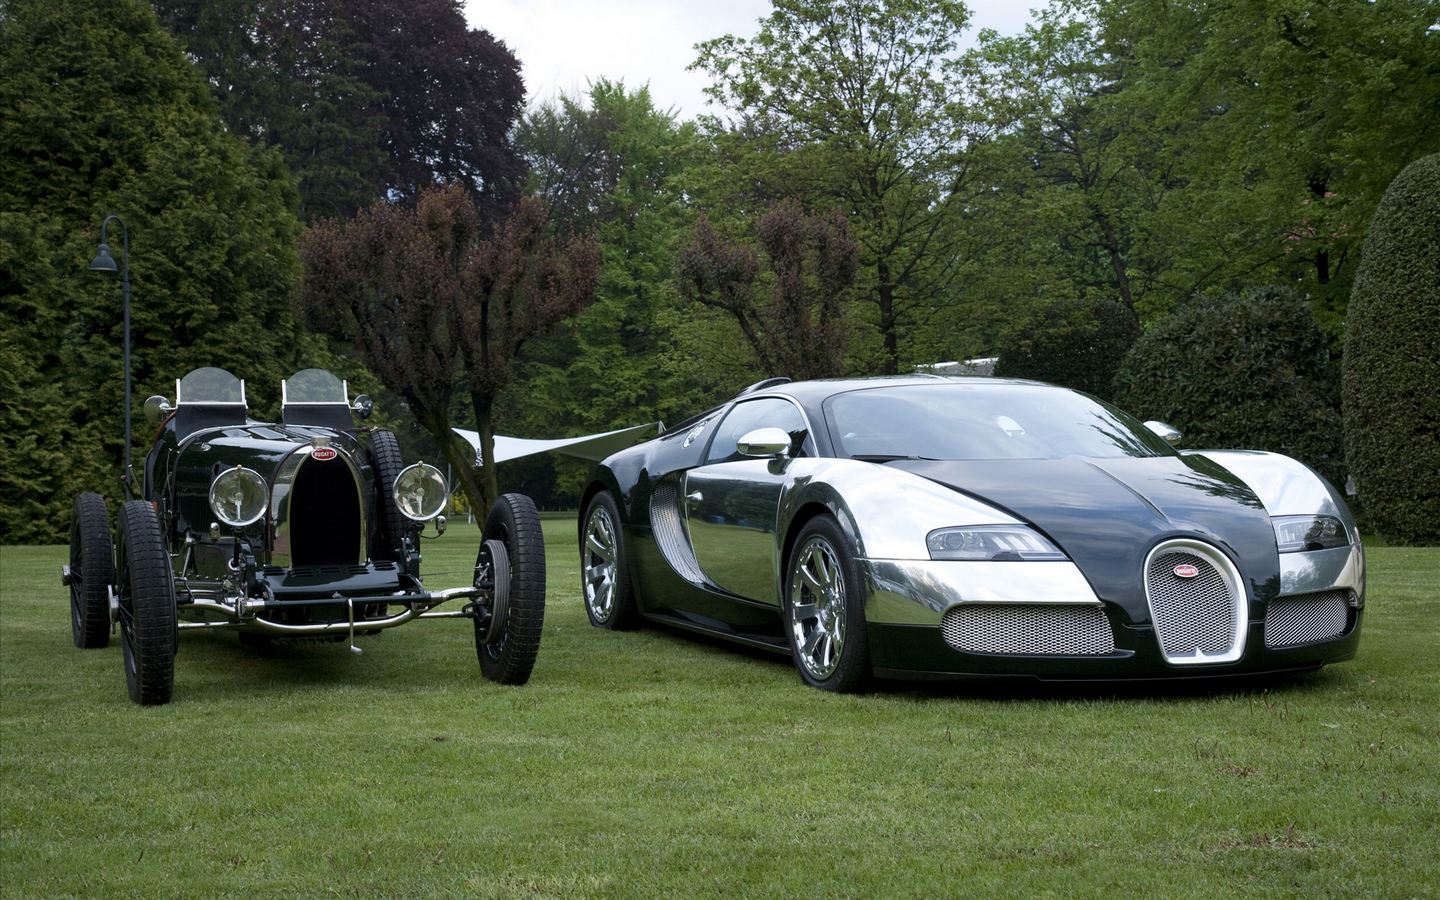 1440x900, 294 Kb / Bugatti